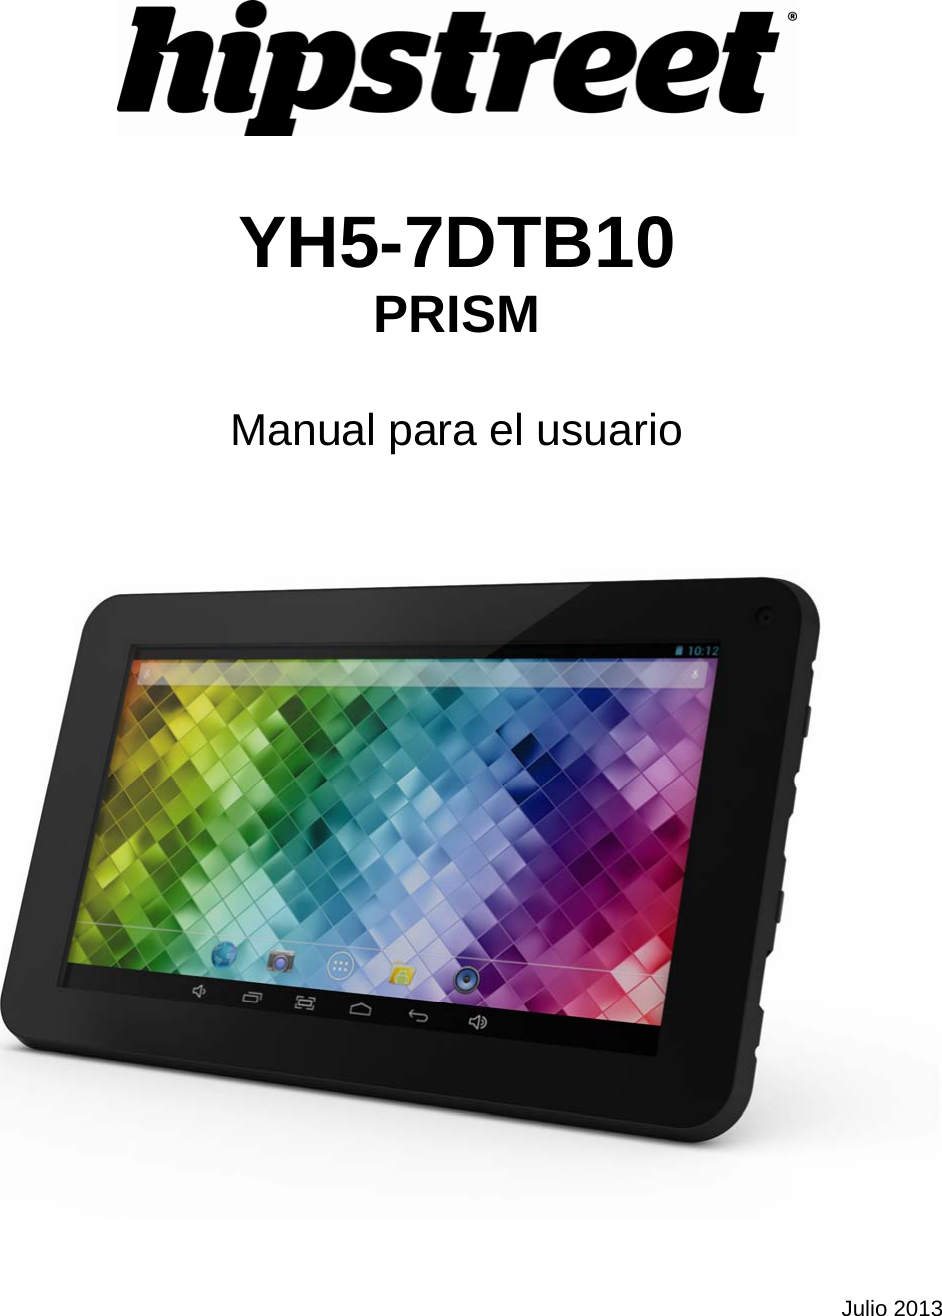    YH5-7DTB10 PRISM  Manual para el usuario         Julio 2013 